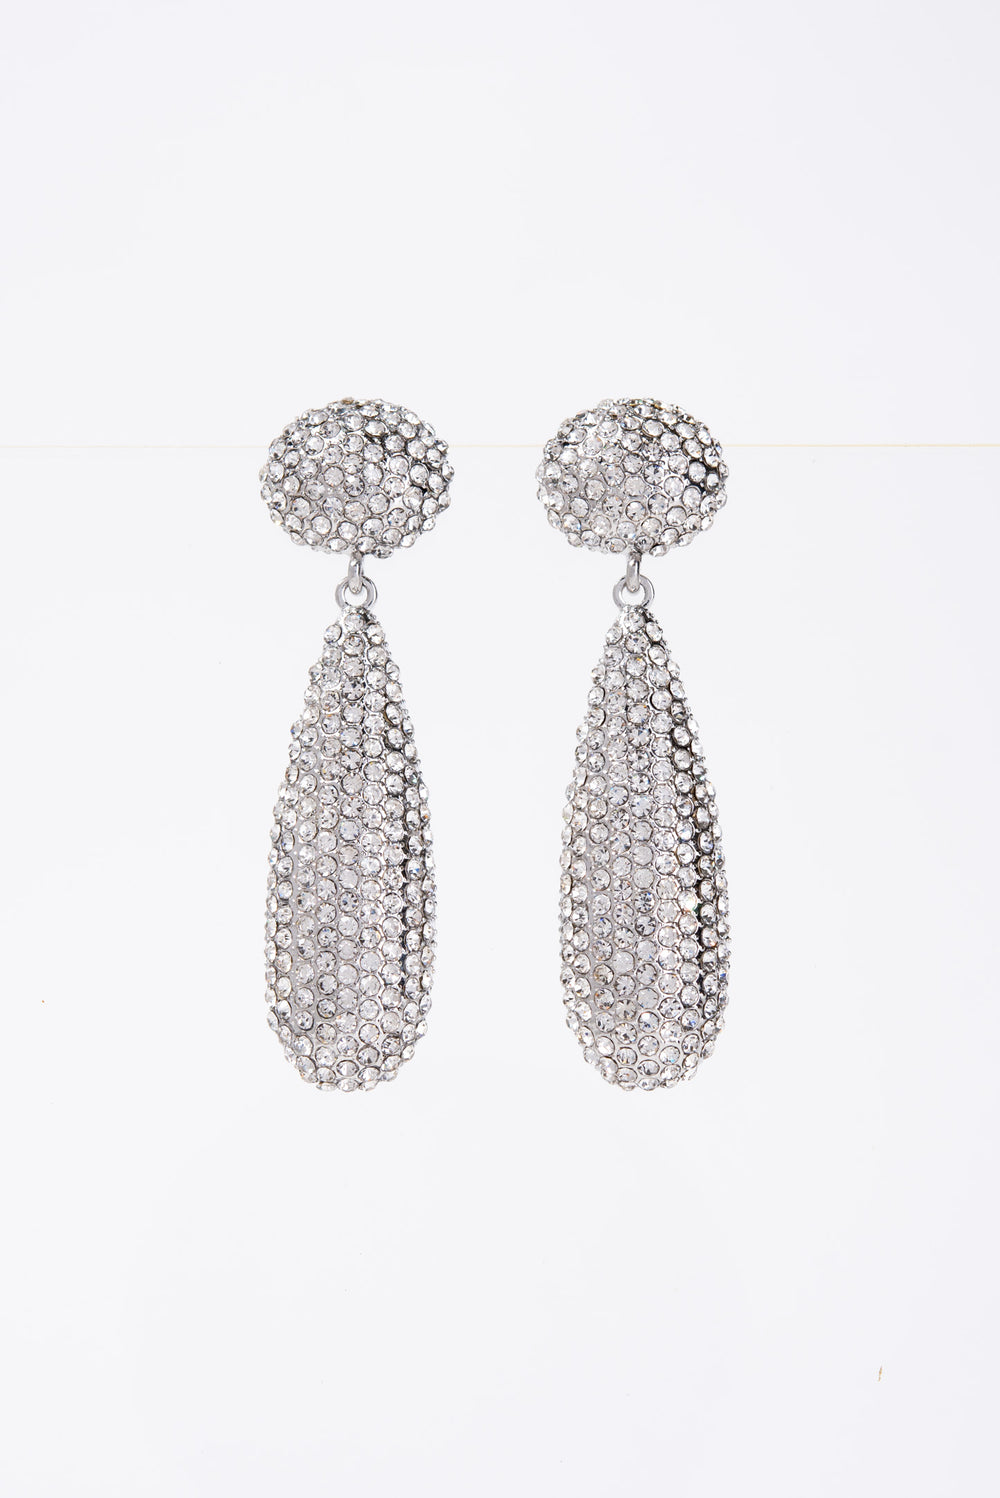 Adelisa 2-Tier Crystal Rhinestone Pave Teardrop Earrings - Silver Crystal